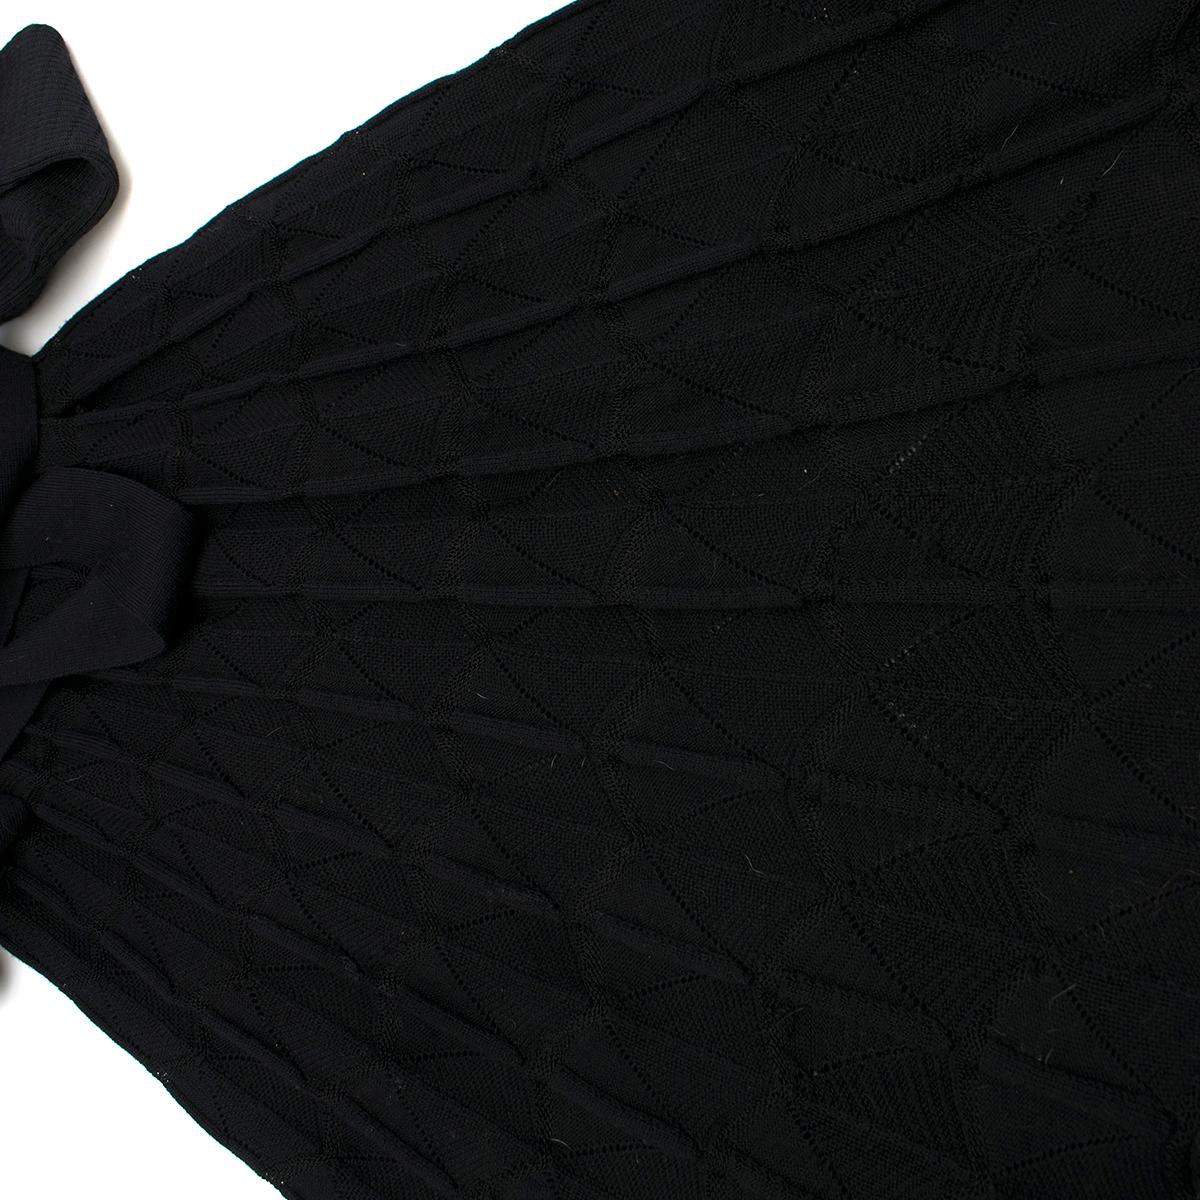 Missoni Black Crotchet Knit-Patterned Stretch Rope Dress - Size US 4 3